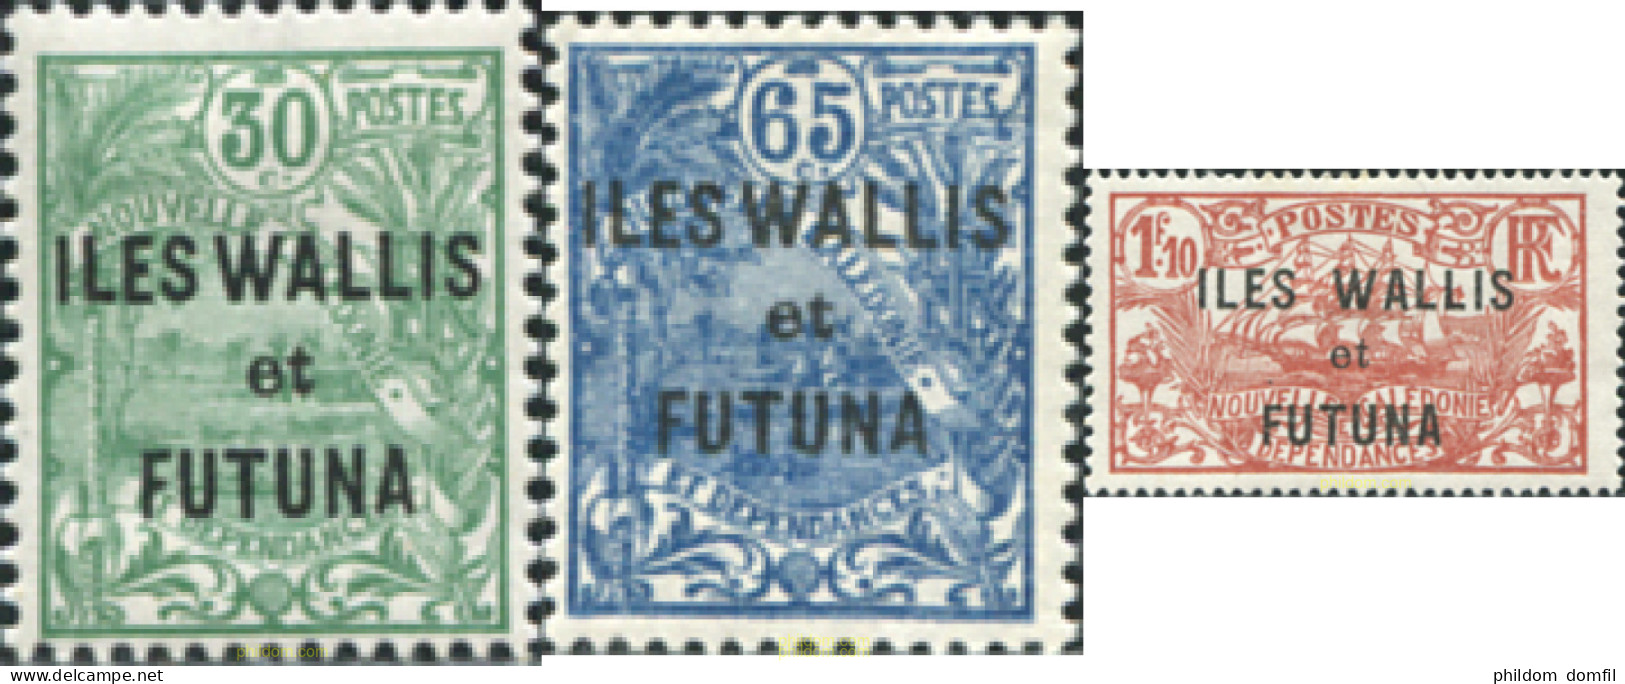 608335 HINGED WALLIS Y FUTUNA 1927 TIPOS DE NUEVA CALEDONIA SOBRE IMPRESOS - Unused Stamps